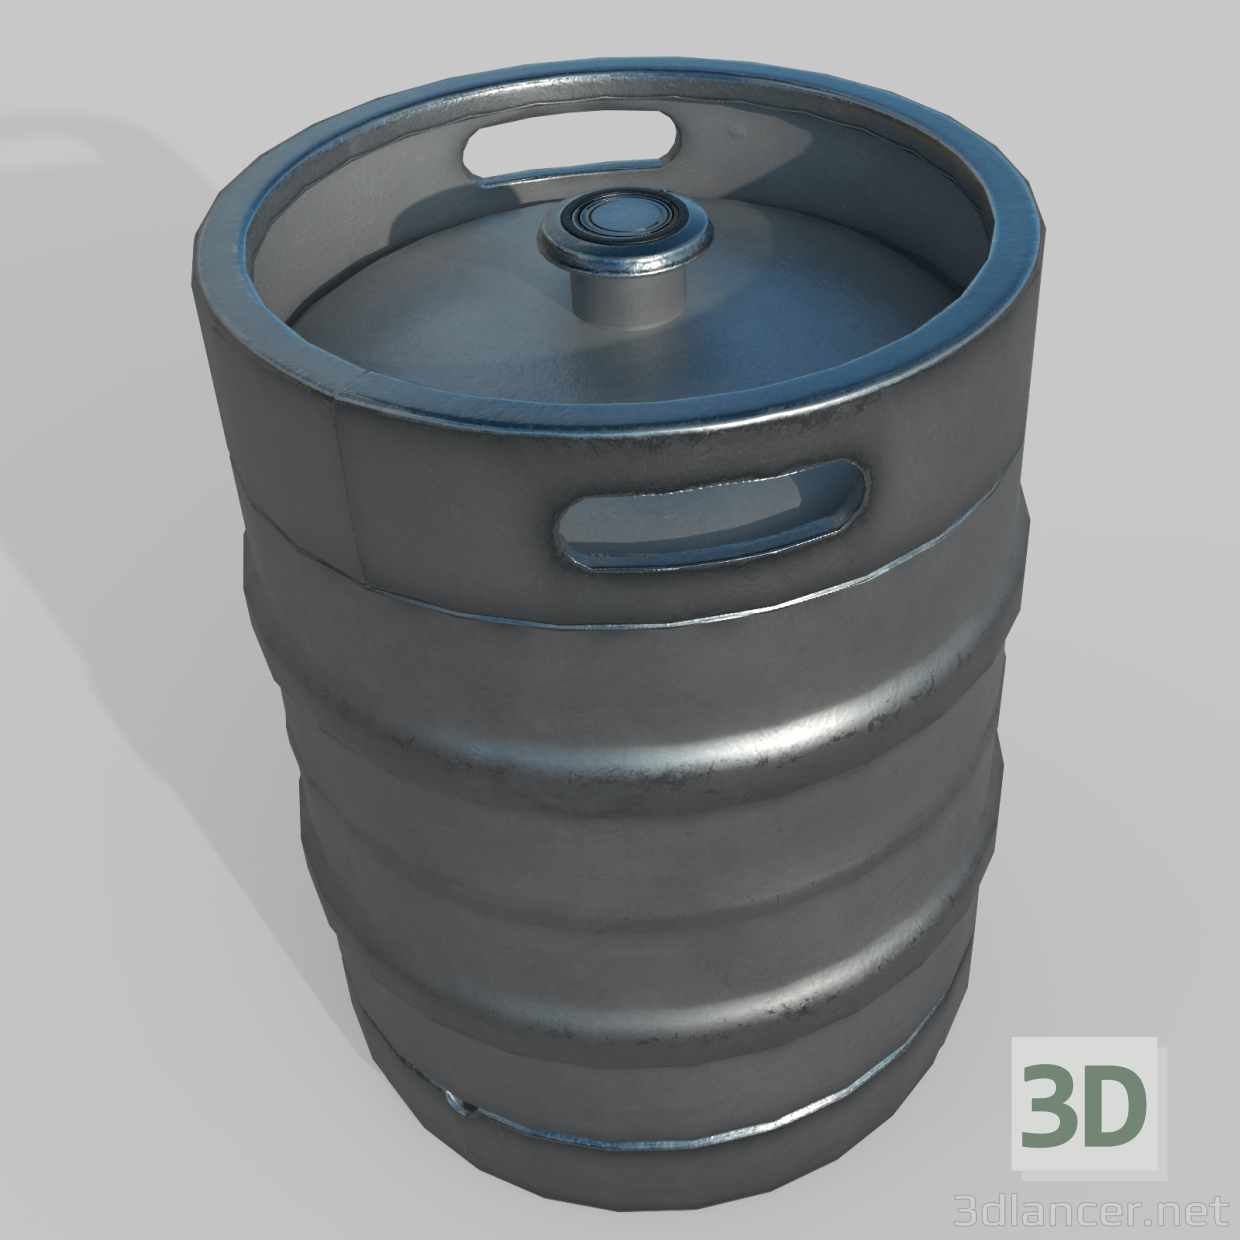 modello 3D di botte di birra comprare - rendering